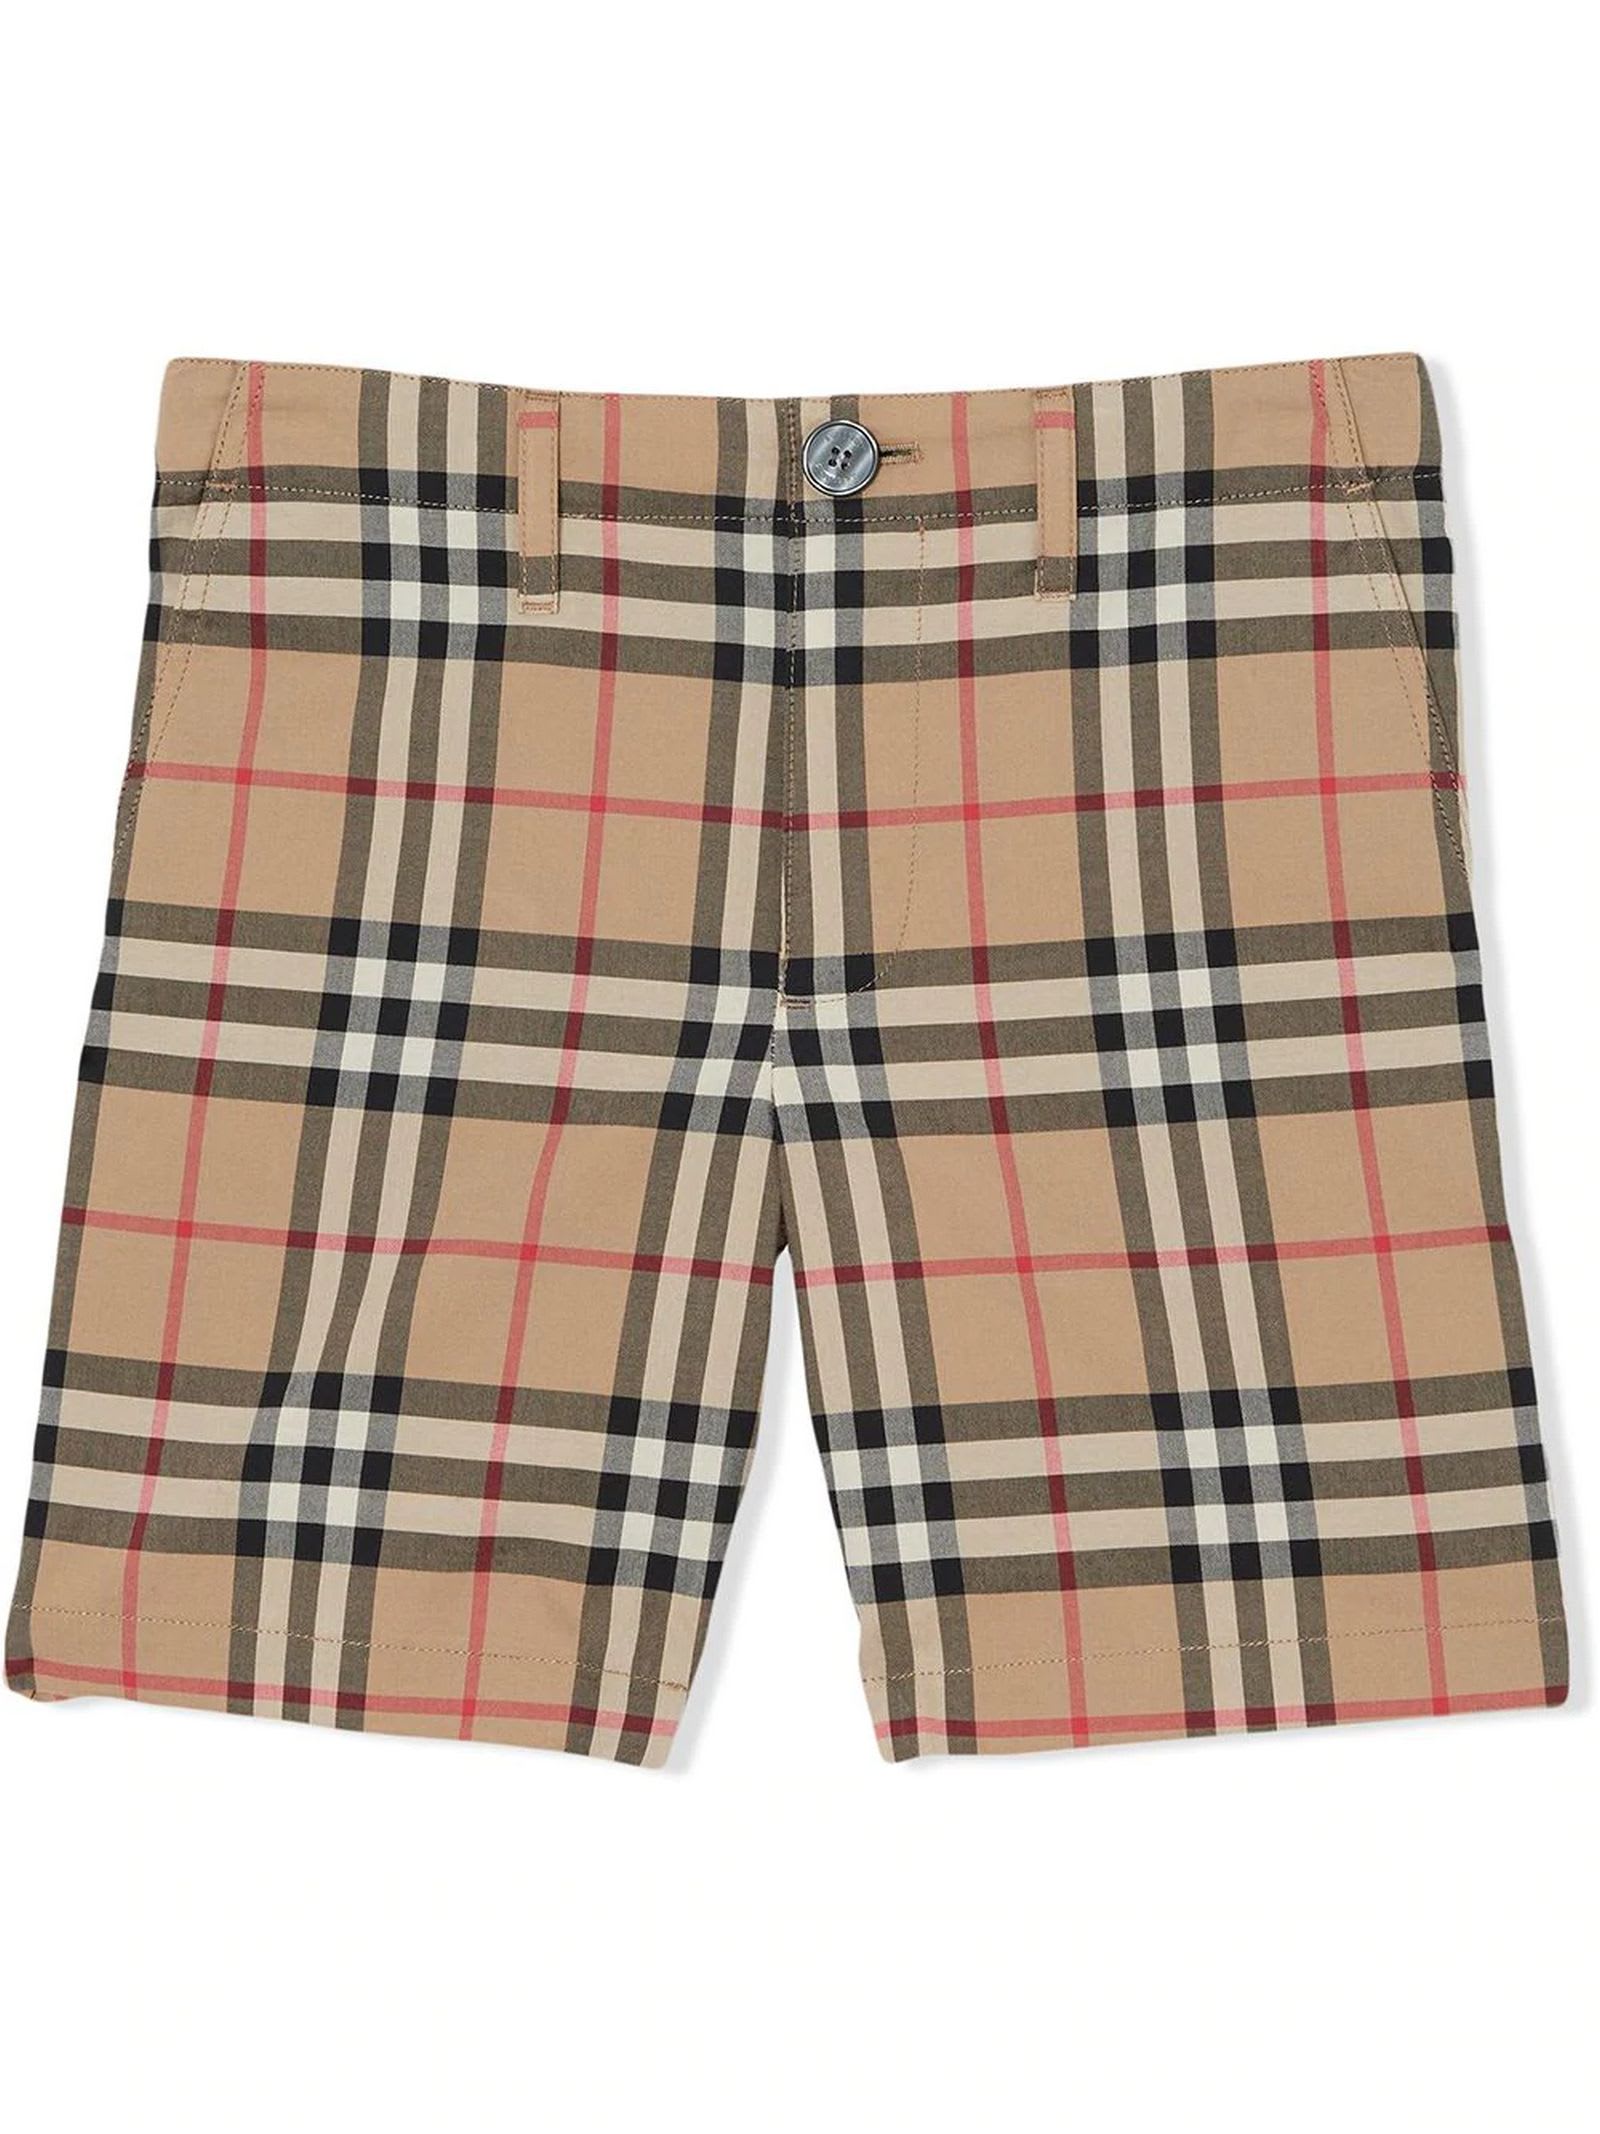 Burberry Beige Cotton Vintage Check Shorts